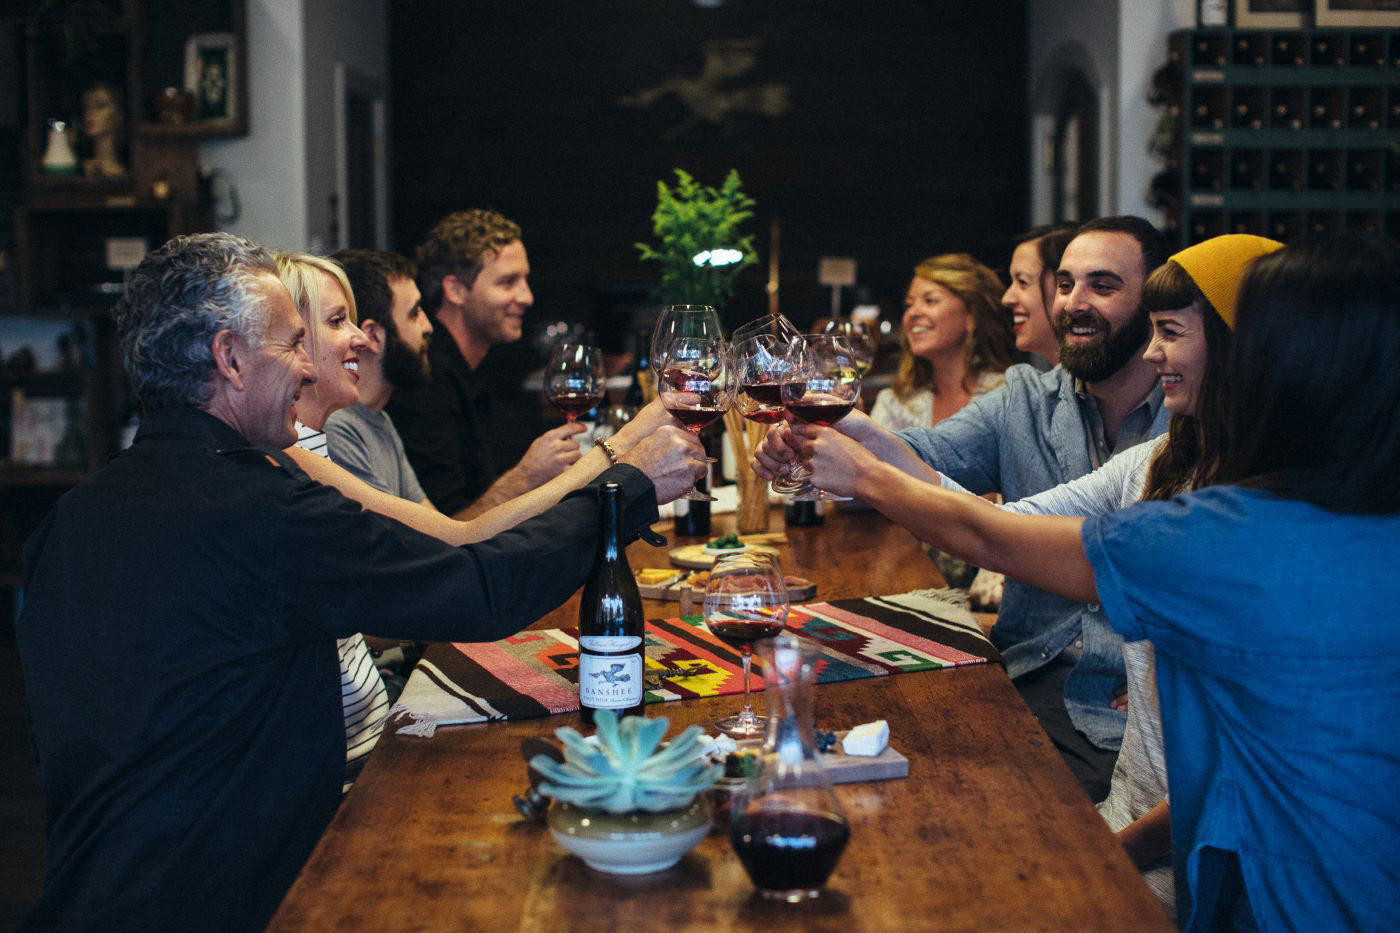 Family enjoying wine together